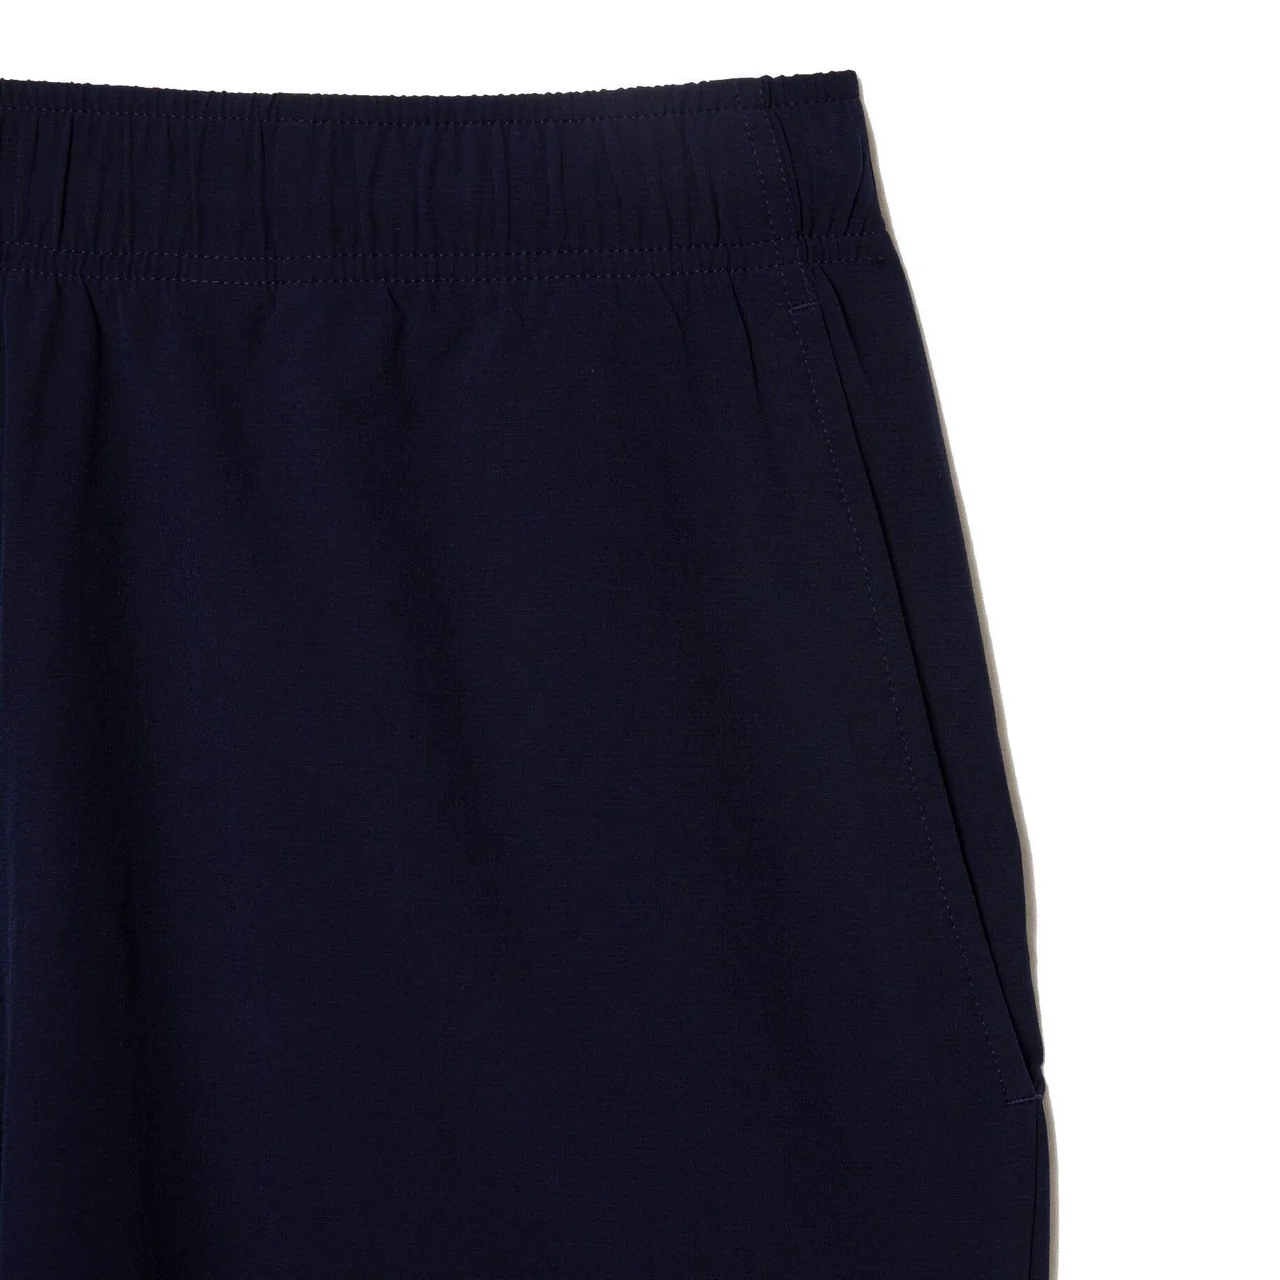 Lacoste Sport Ultra-Light Shorts Navy Blue